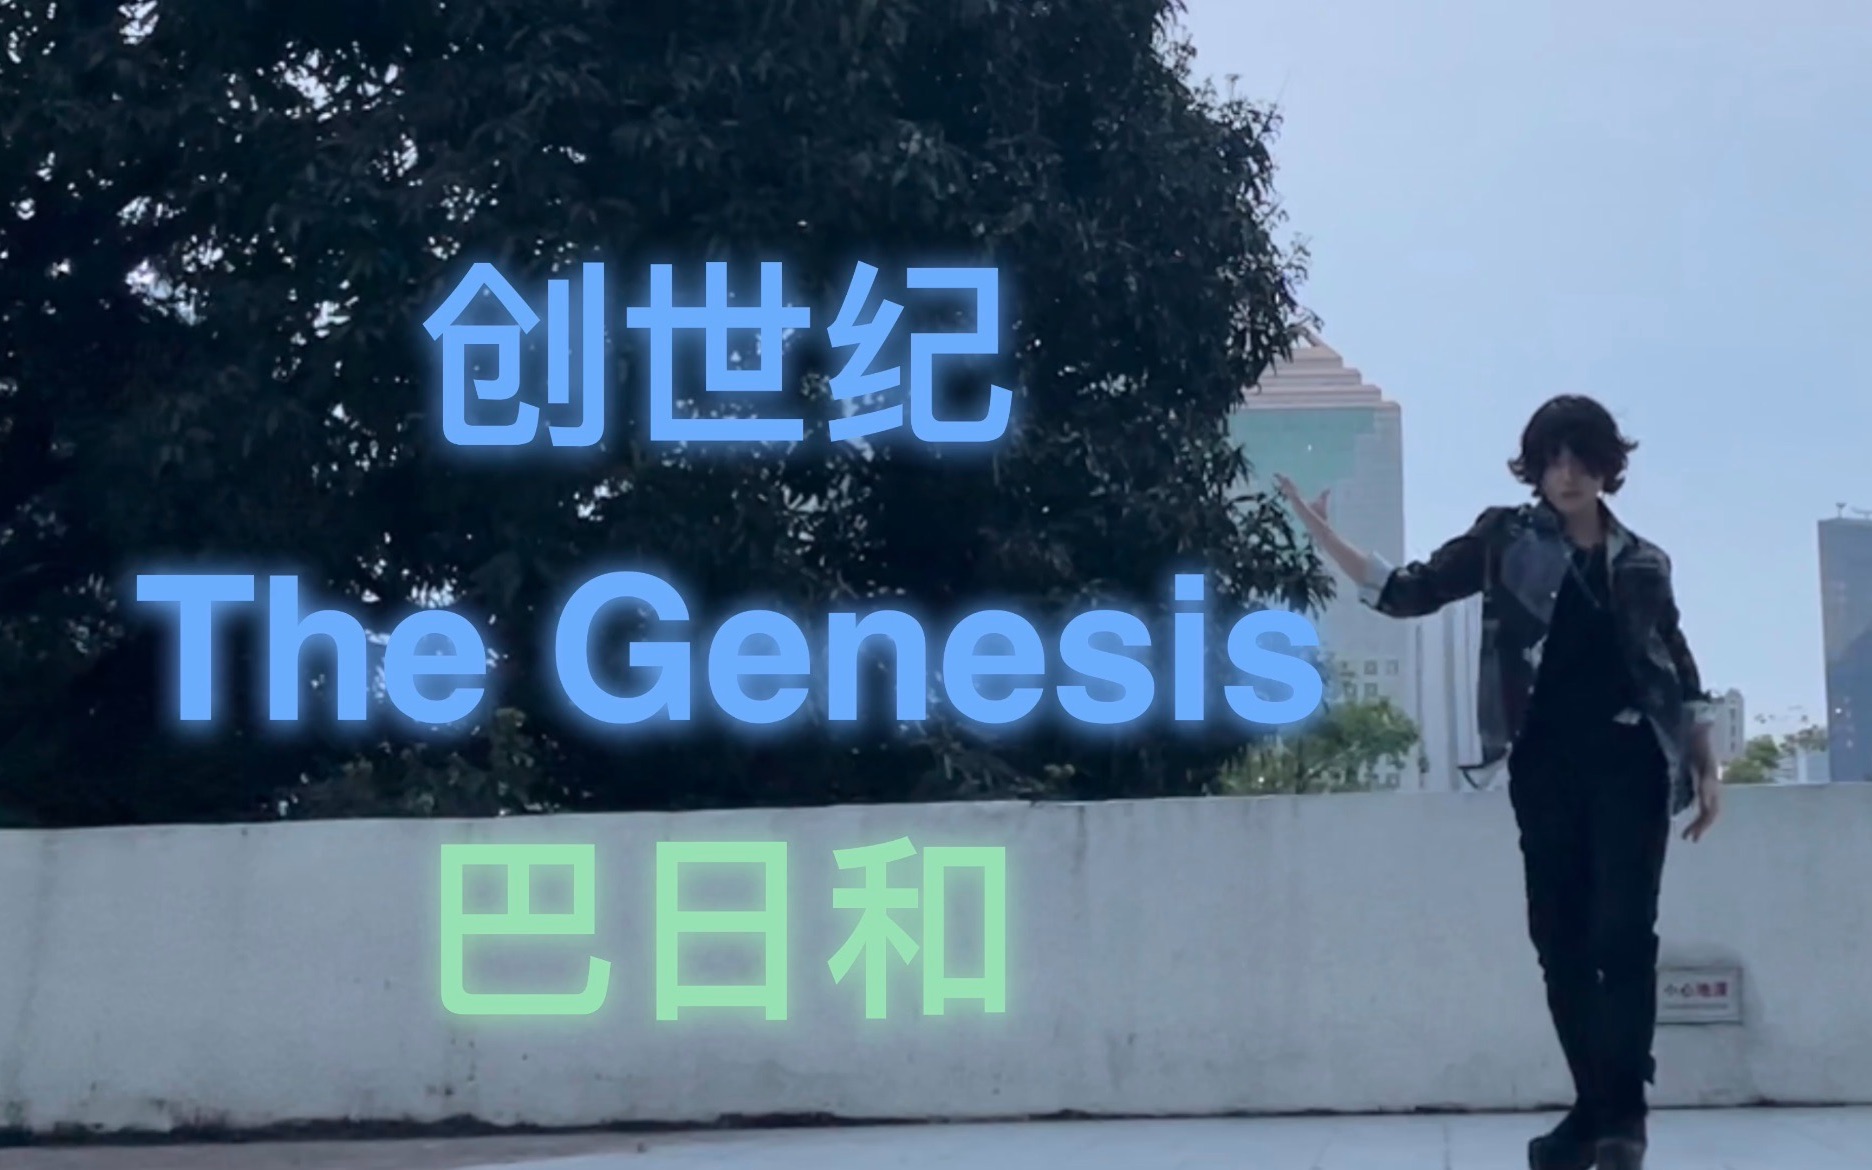 【夕夜】es偶像梦幻祭The Genesis 创世纪完整版-天体练舞视频【Eden】